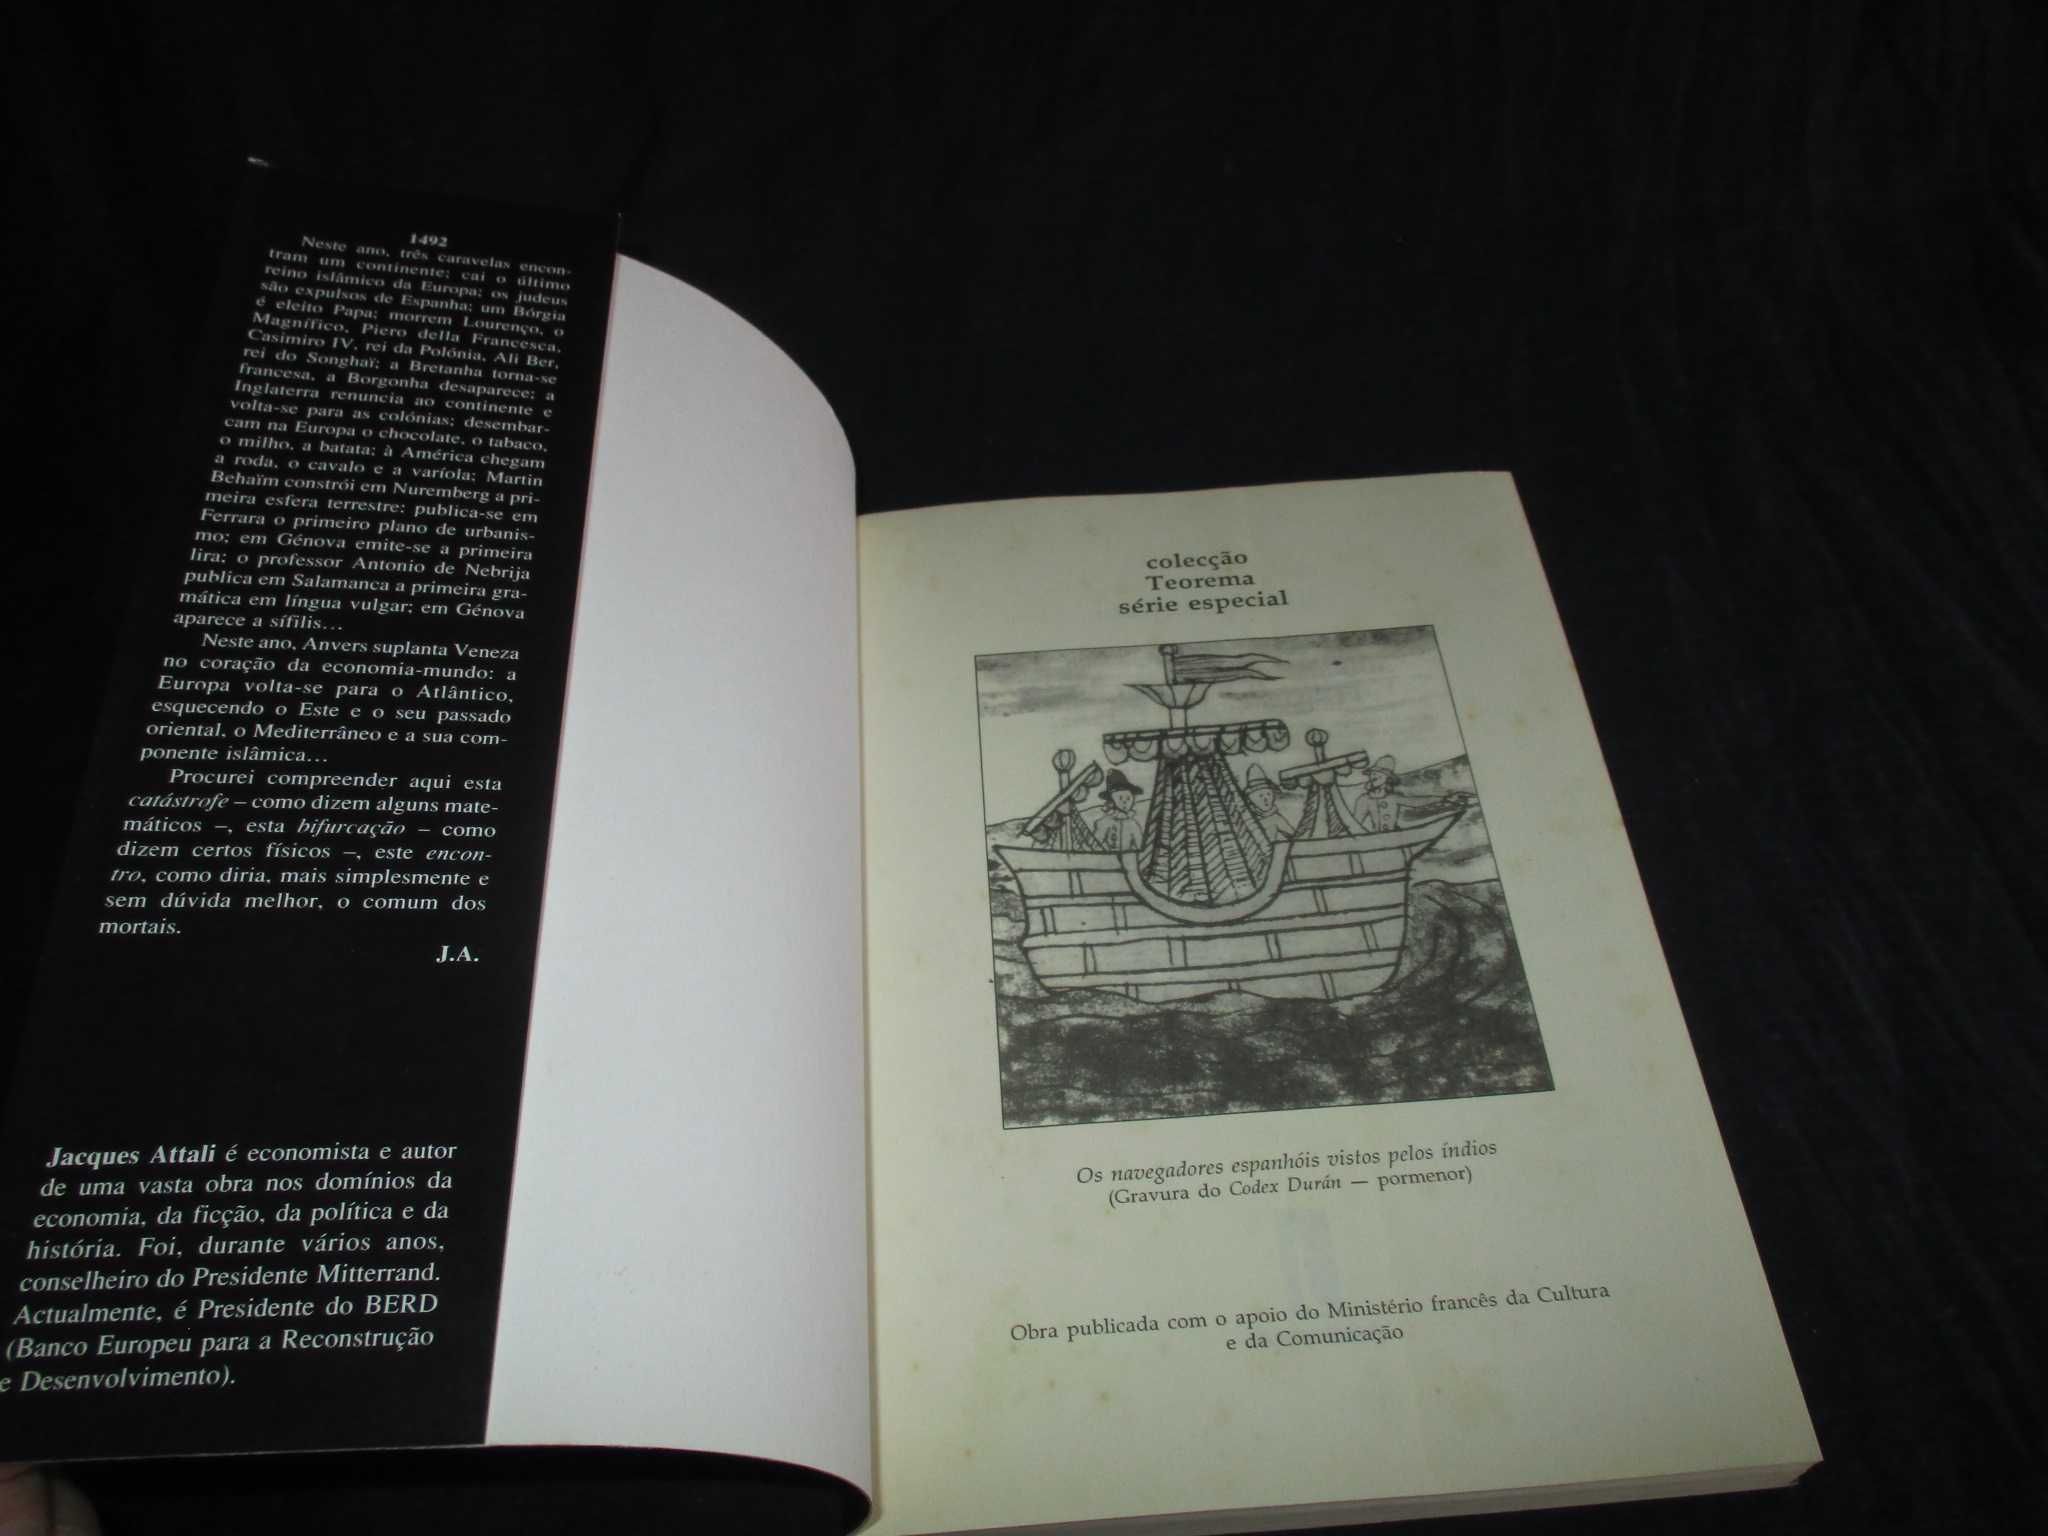 Livro 1492 Jacques Attali Teorema Série Especial